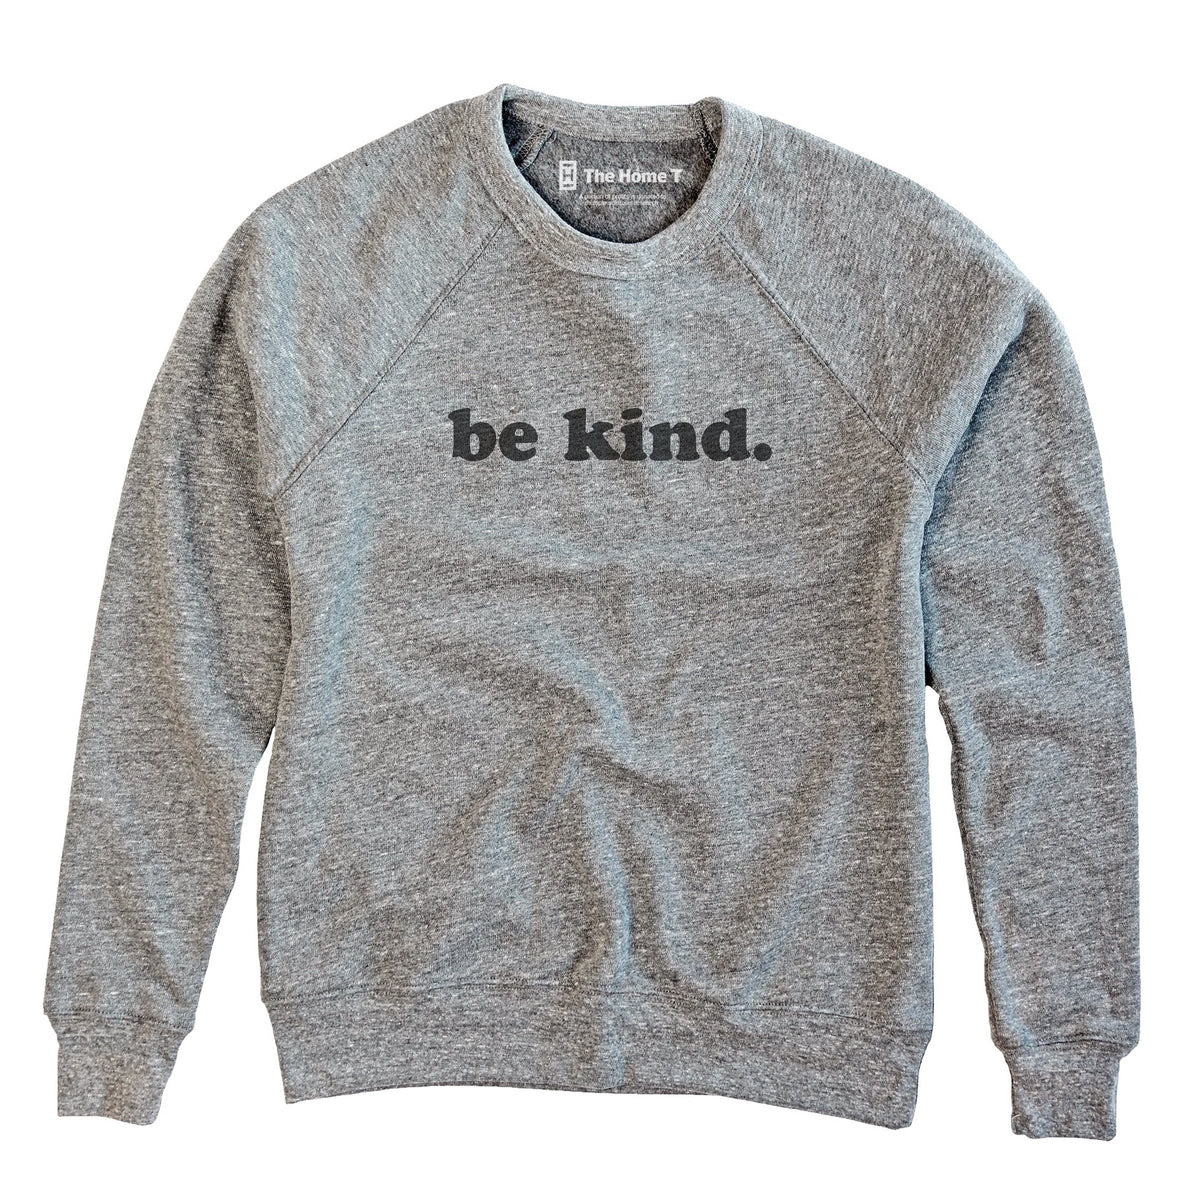 Be Kind stone sweatshirt